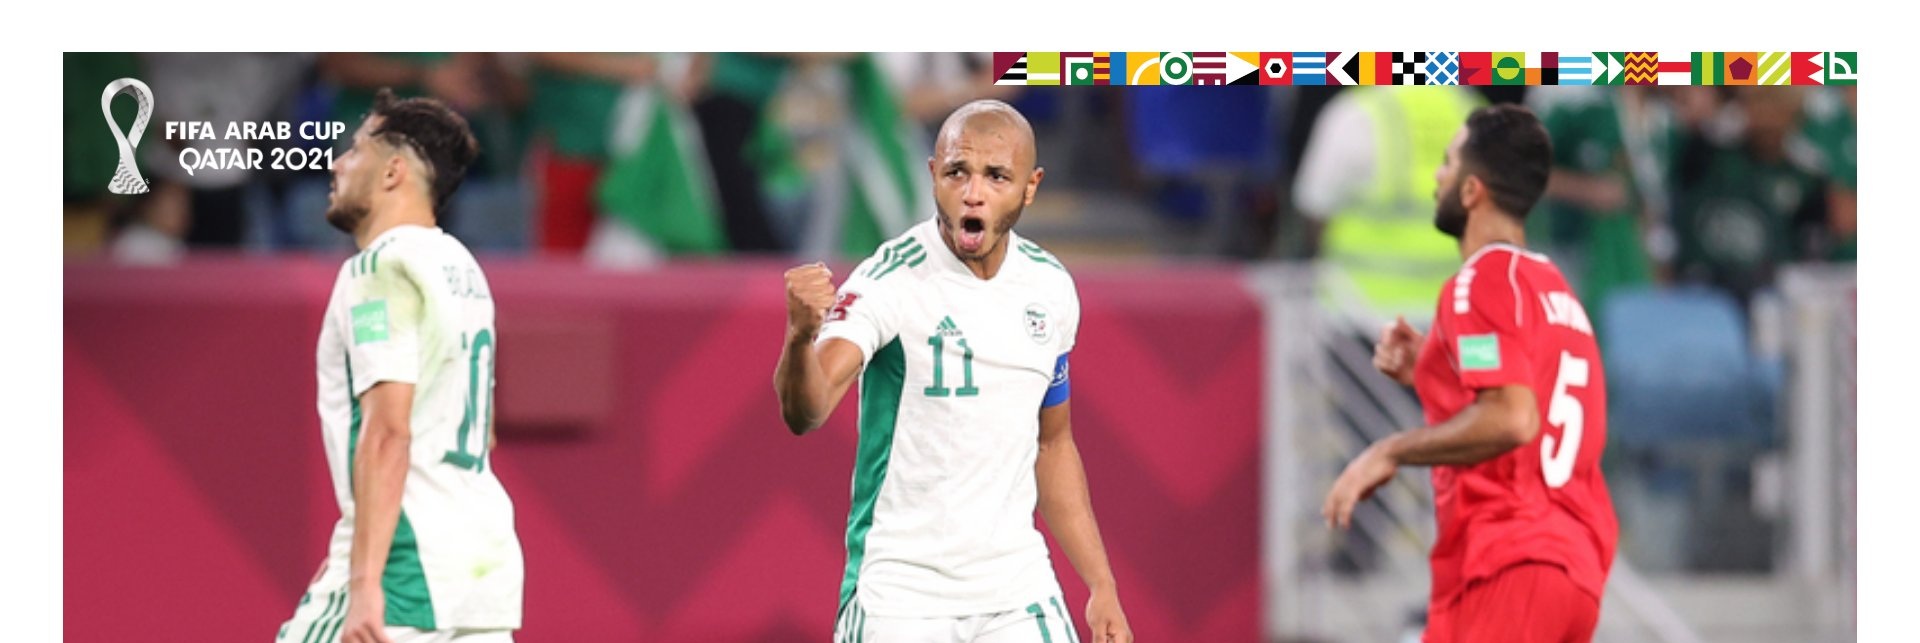 الجزائر تتخطى لبنان في كأس العرب